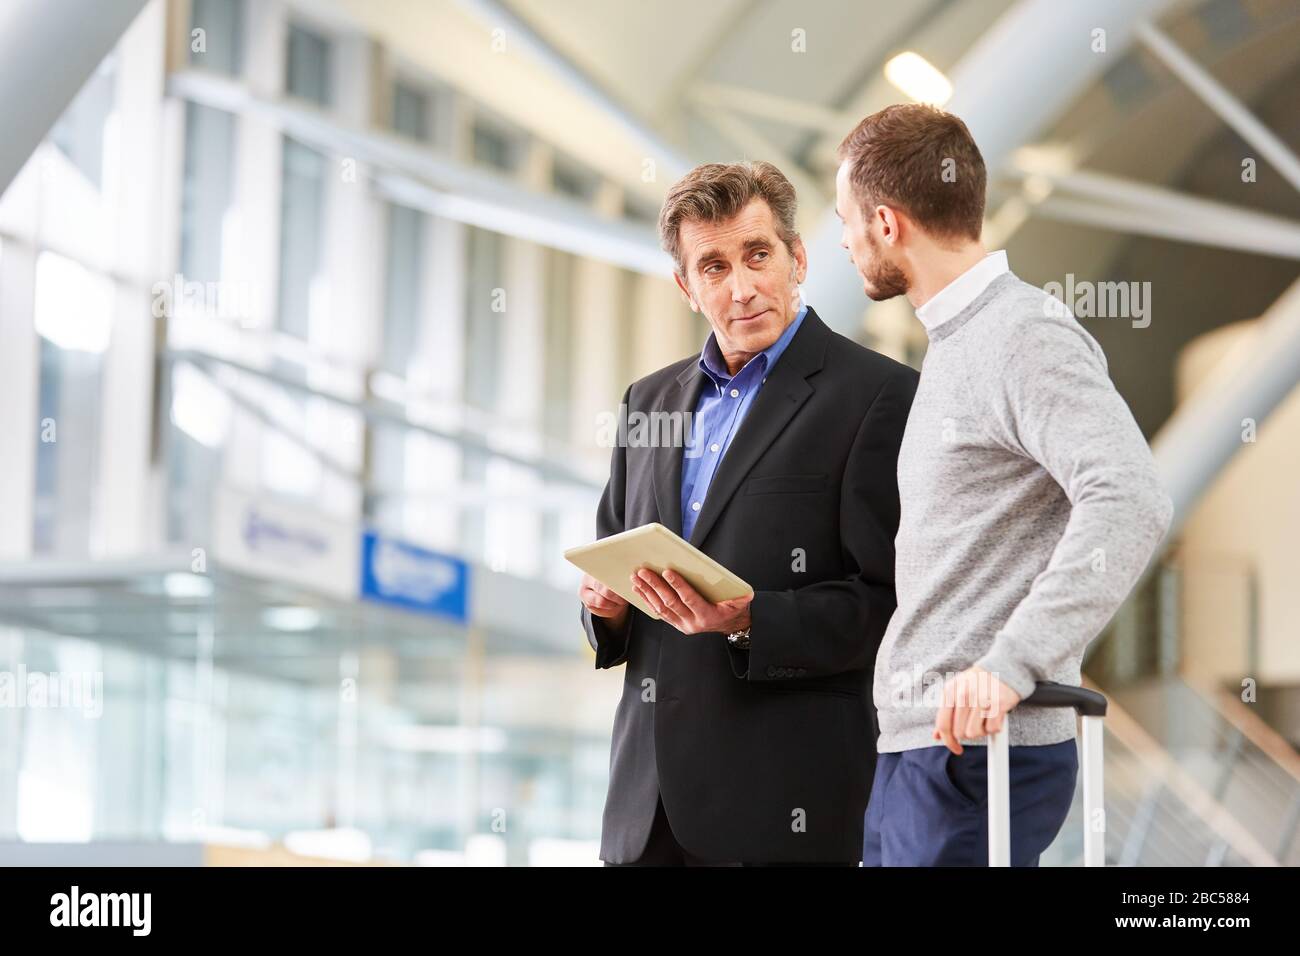 Deux personnes en voyage d'affaires utilisant des tablettes électroniques au terminal de l'aéroport avant un voyage d'affaires Banque D'Images